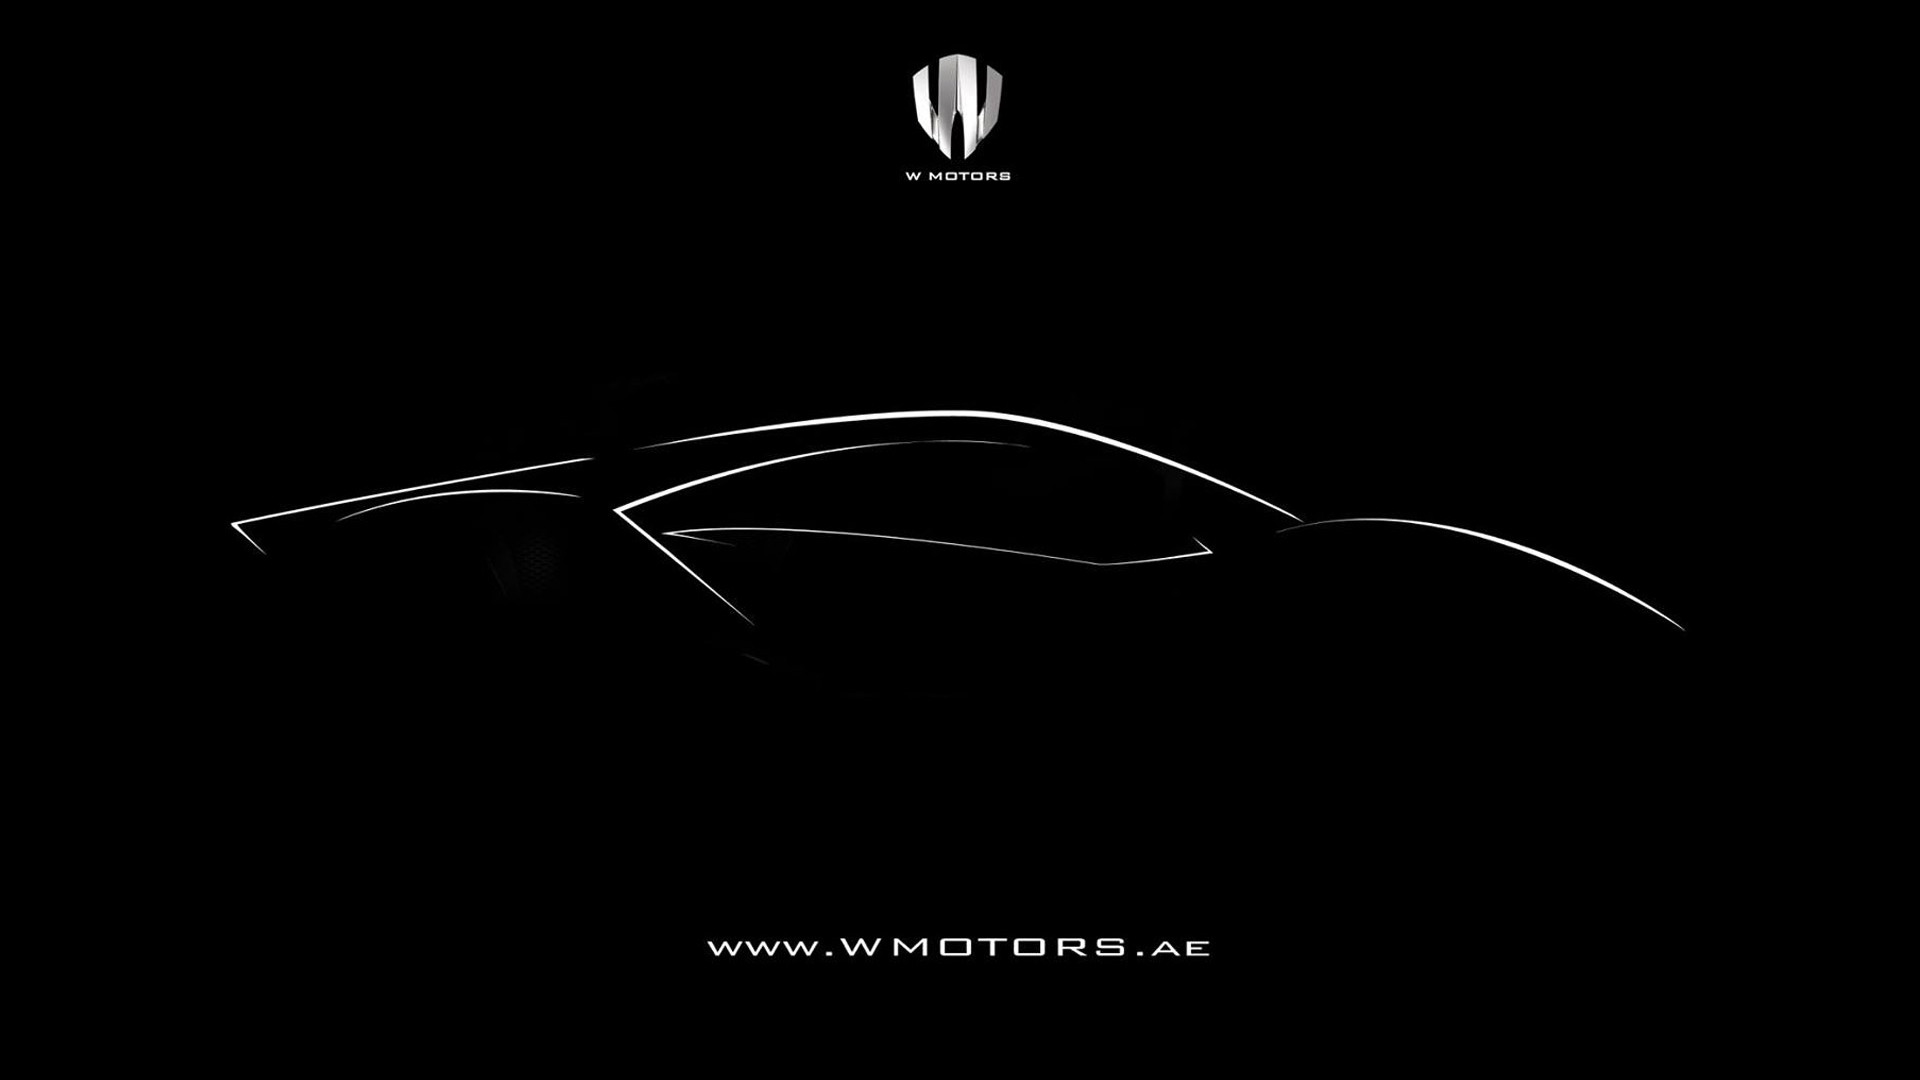 Teaser for W Motors Fenyr Supersport debuting at 2015 Dubai Motor Show